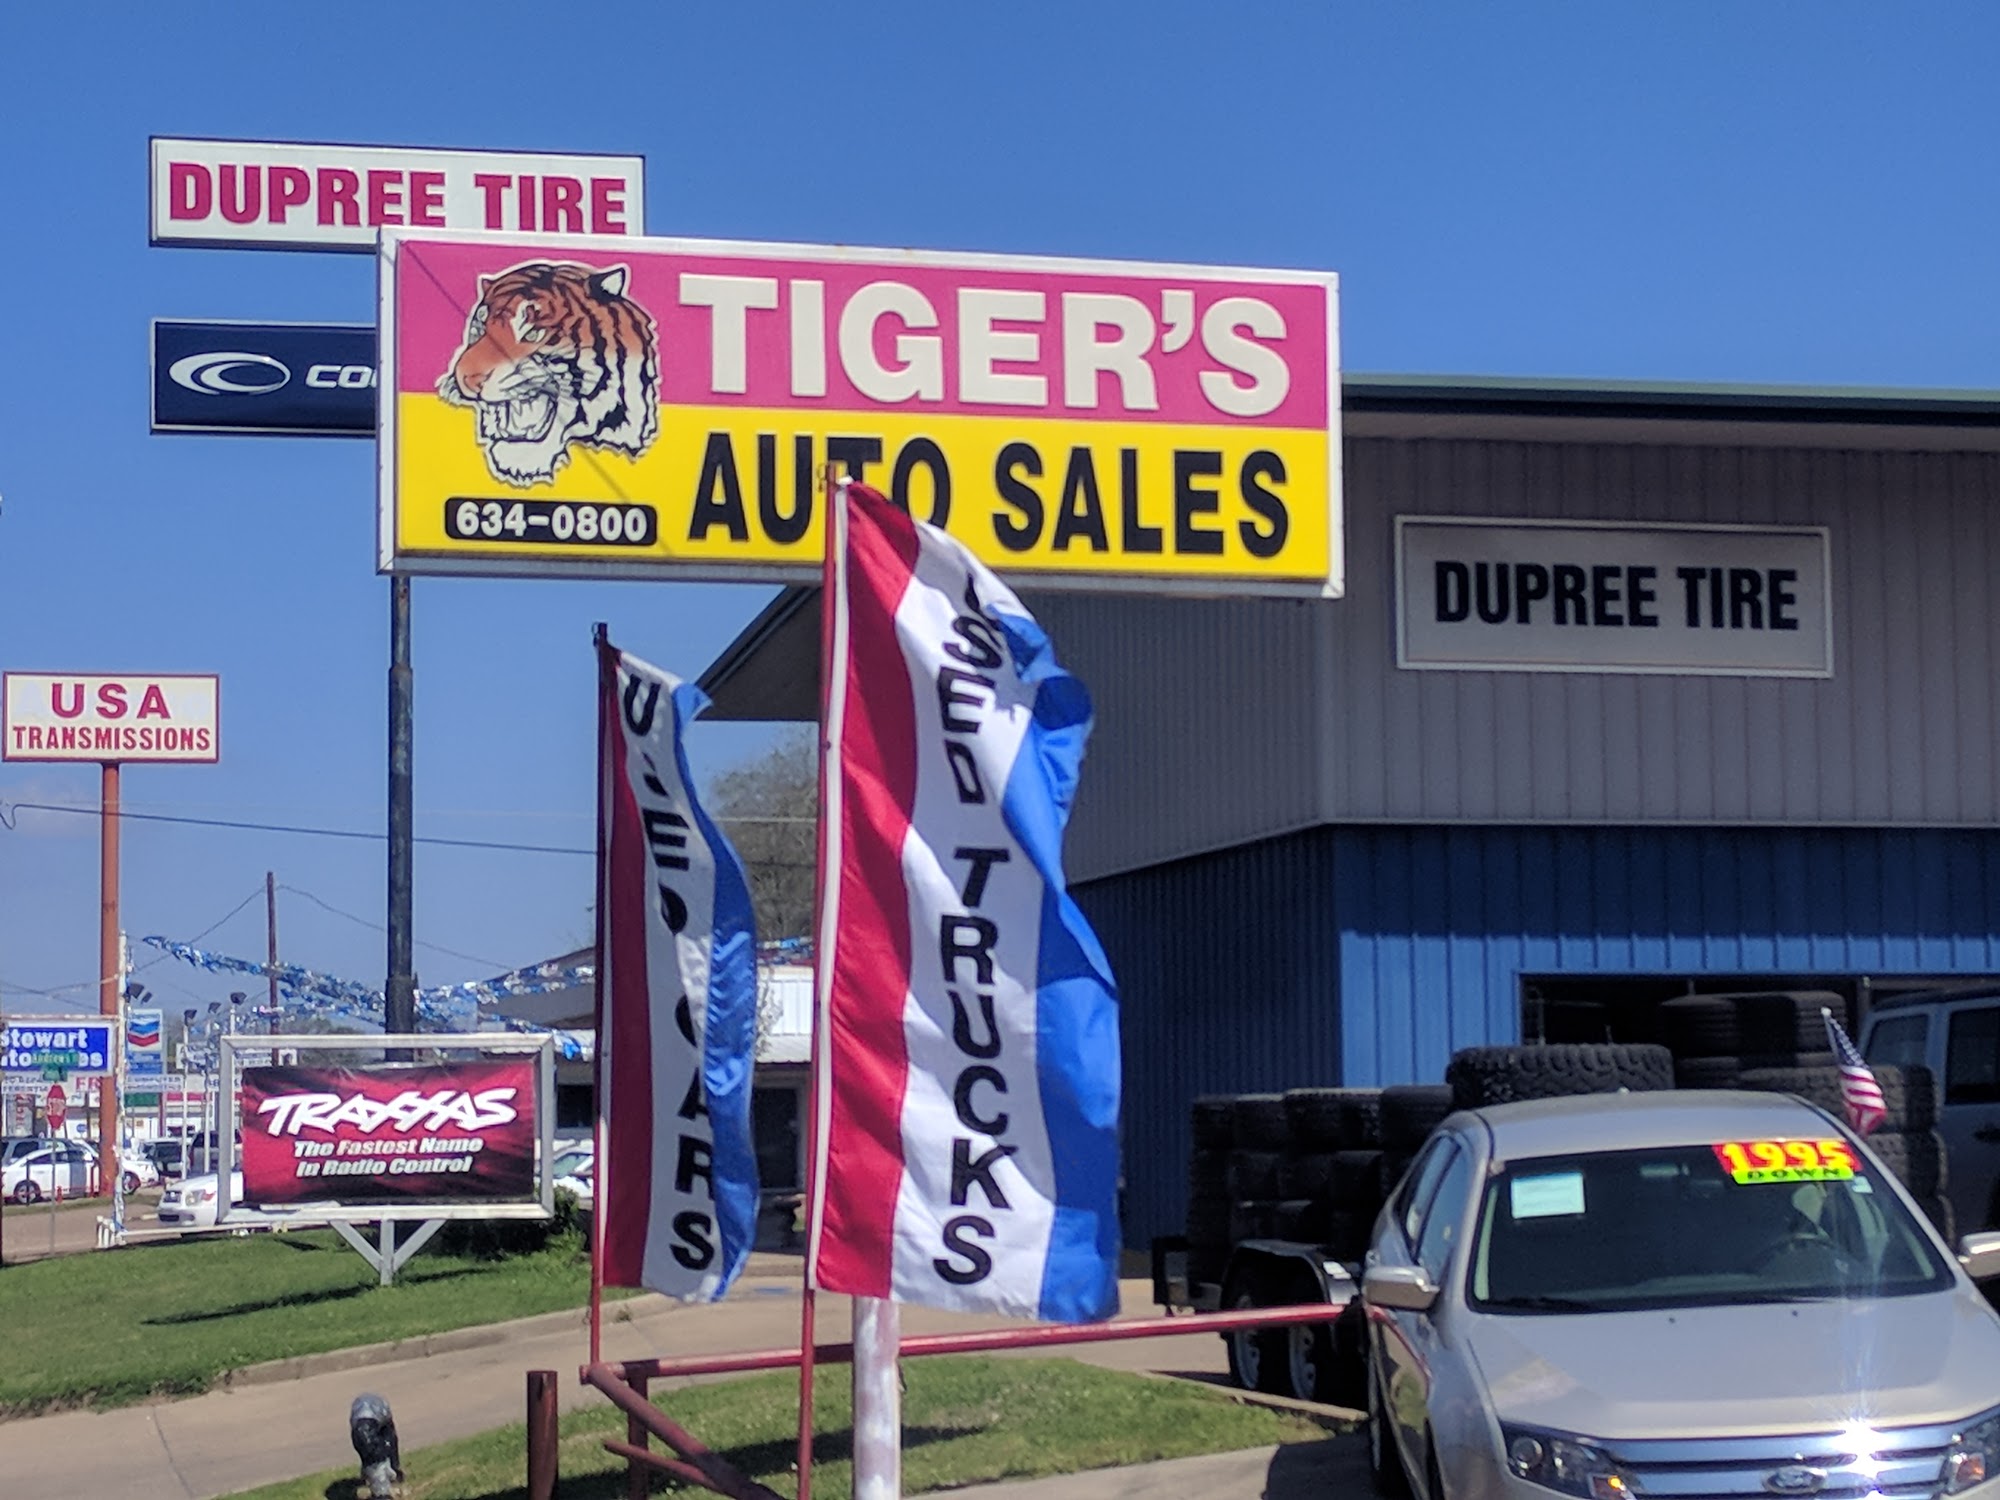 Tiger's Auto Sales of Lufkin